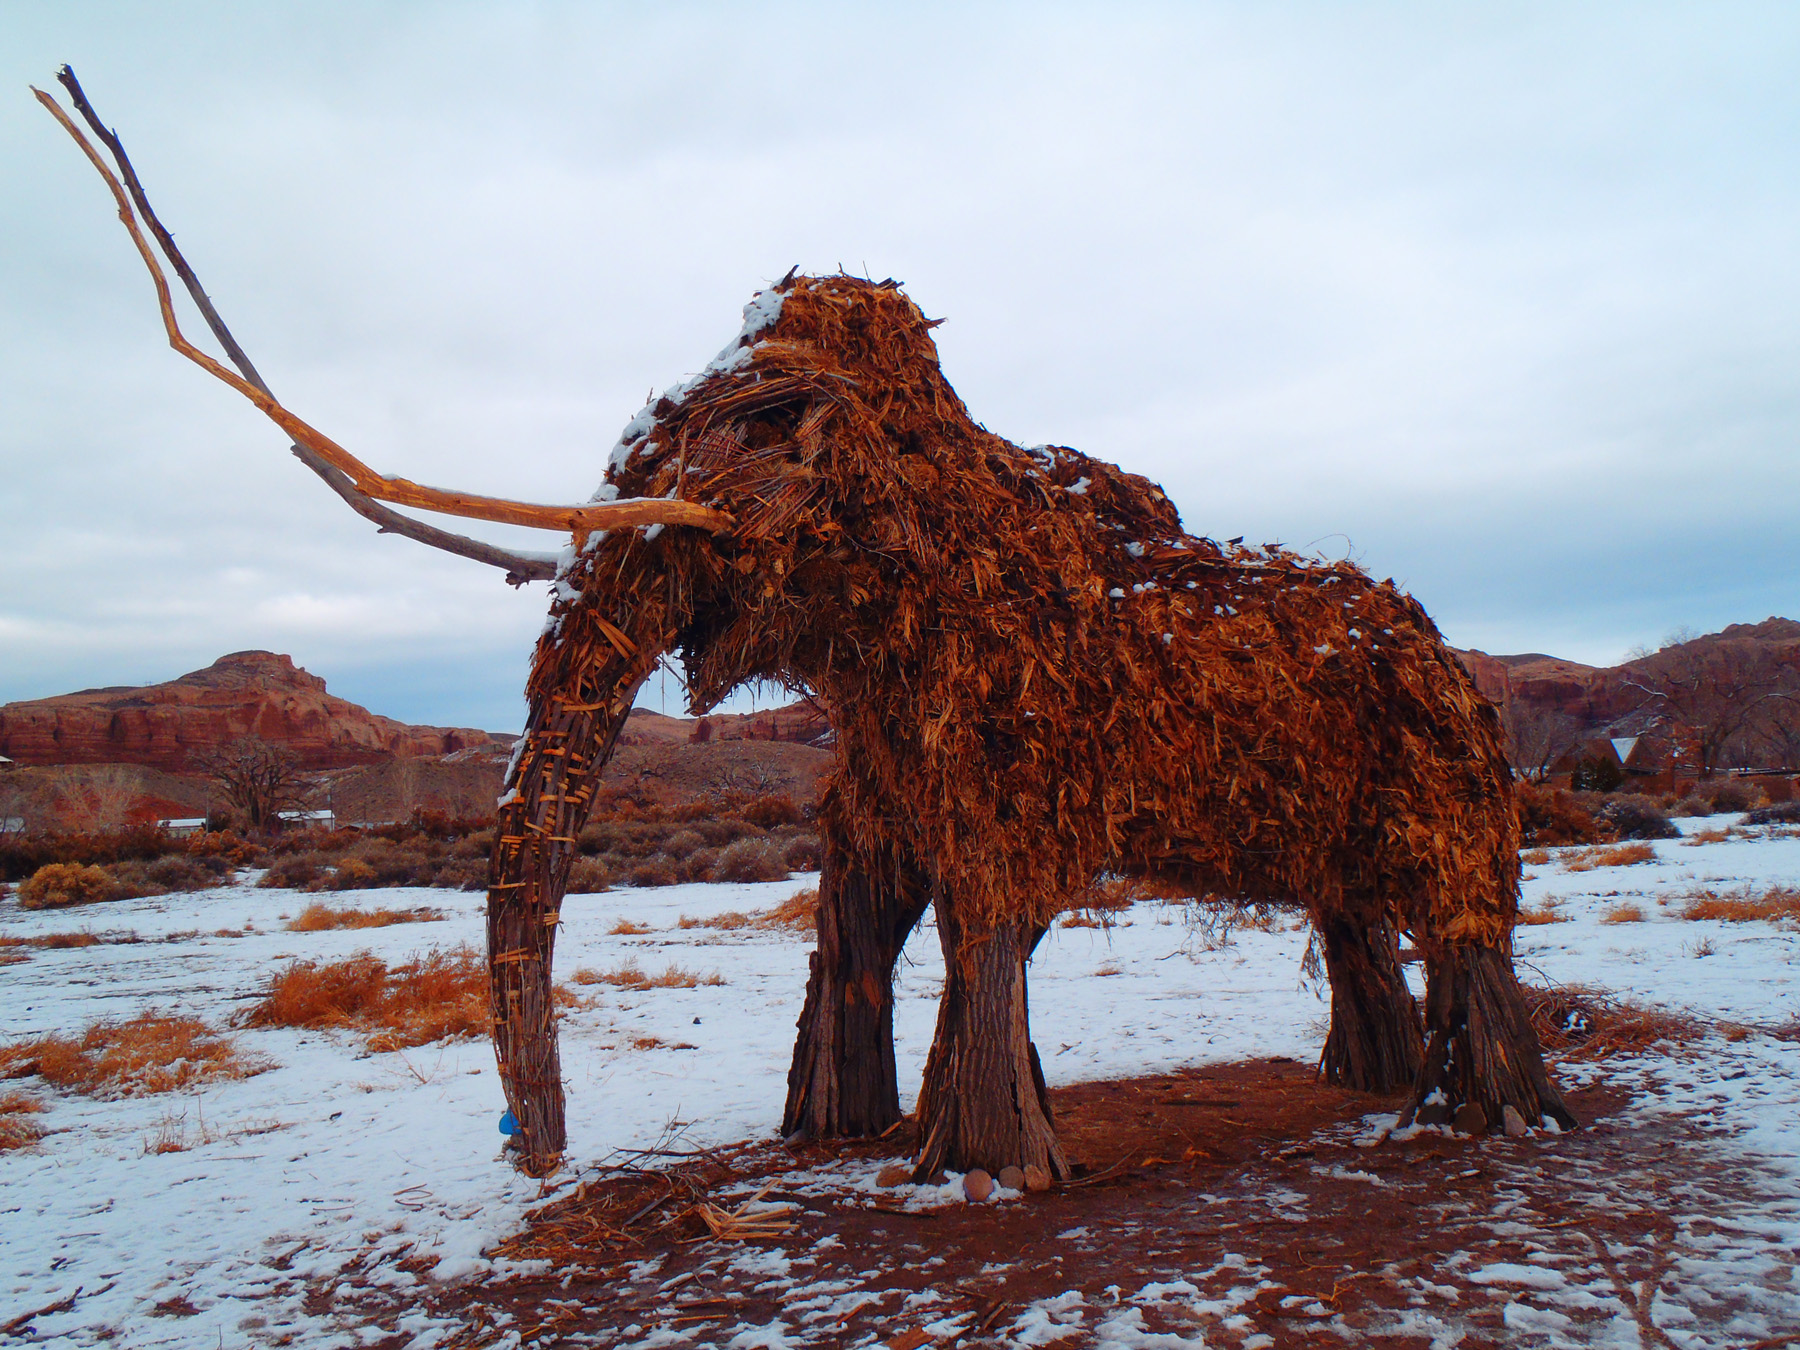 The Bluff Mammoth of Winter 2012–2013. Image: R. E. Burrillo